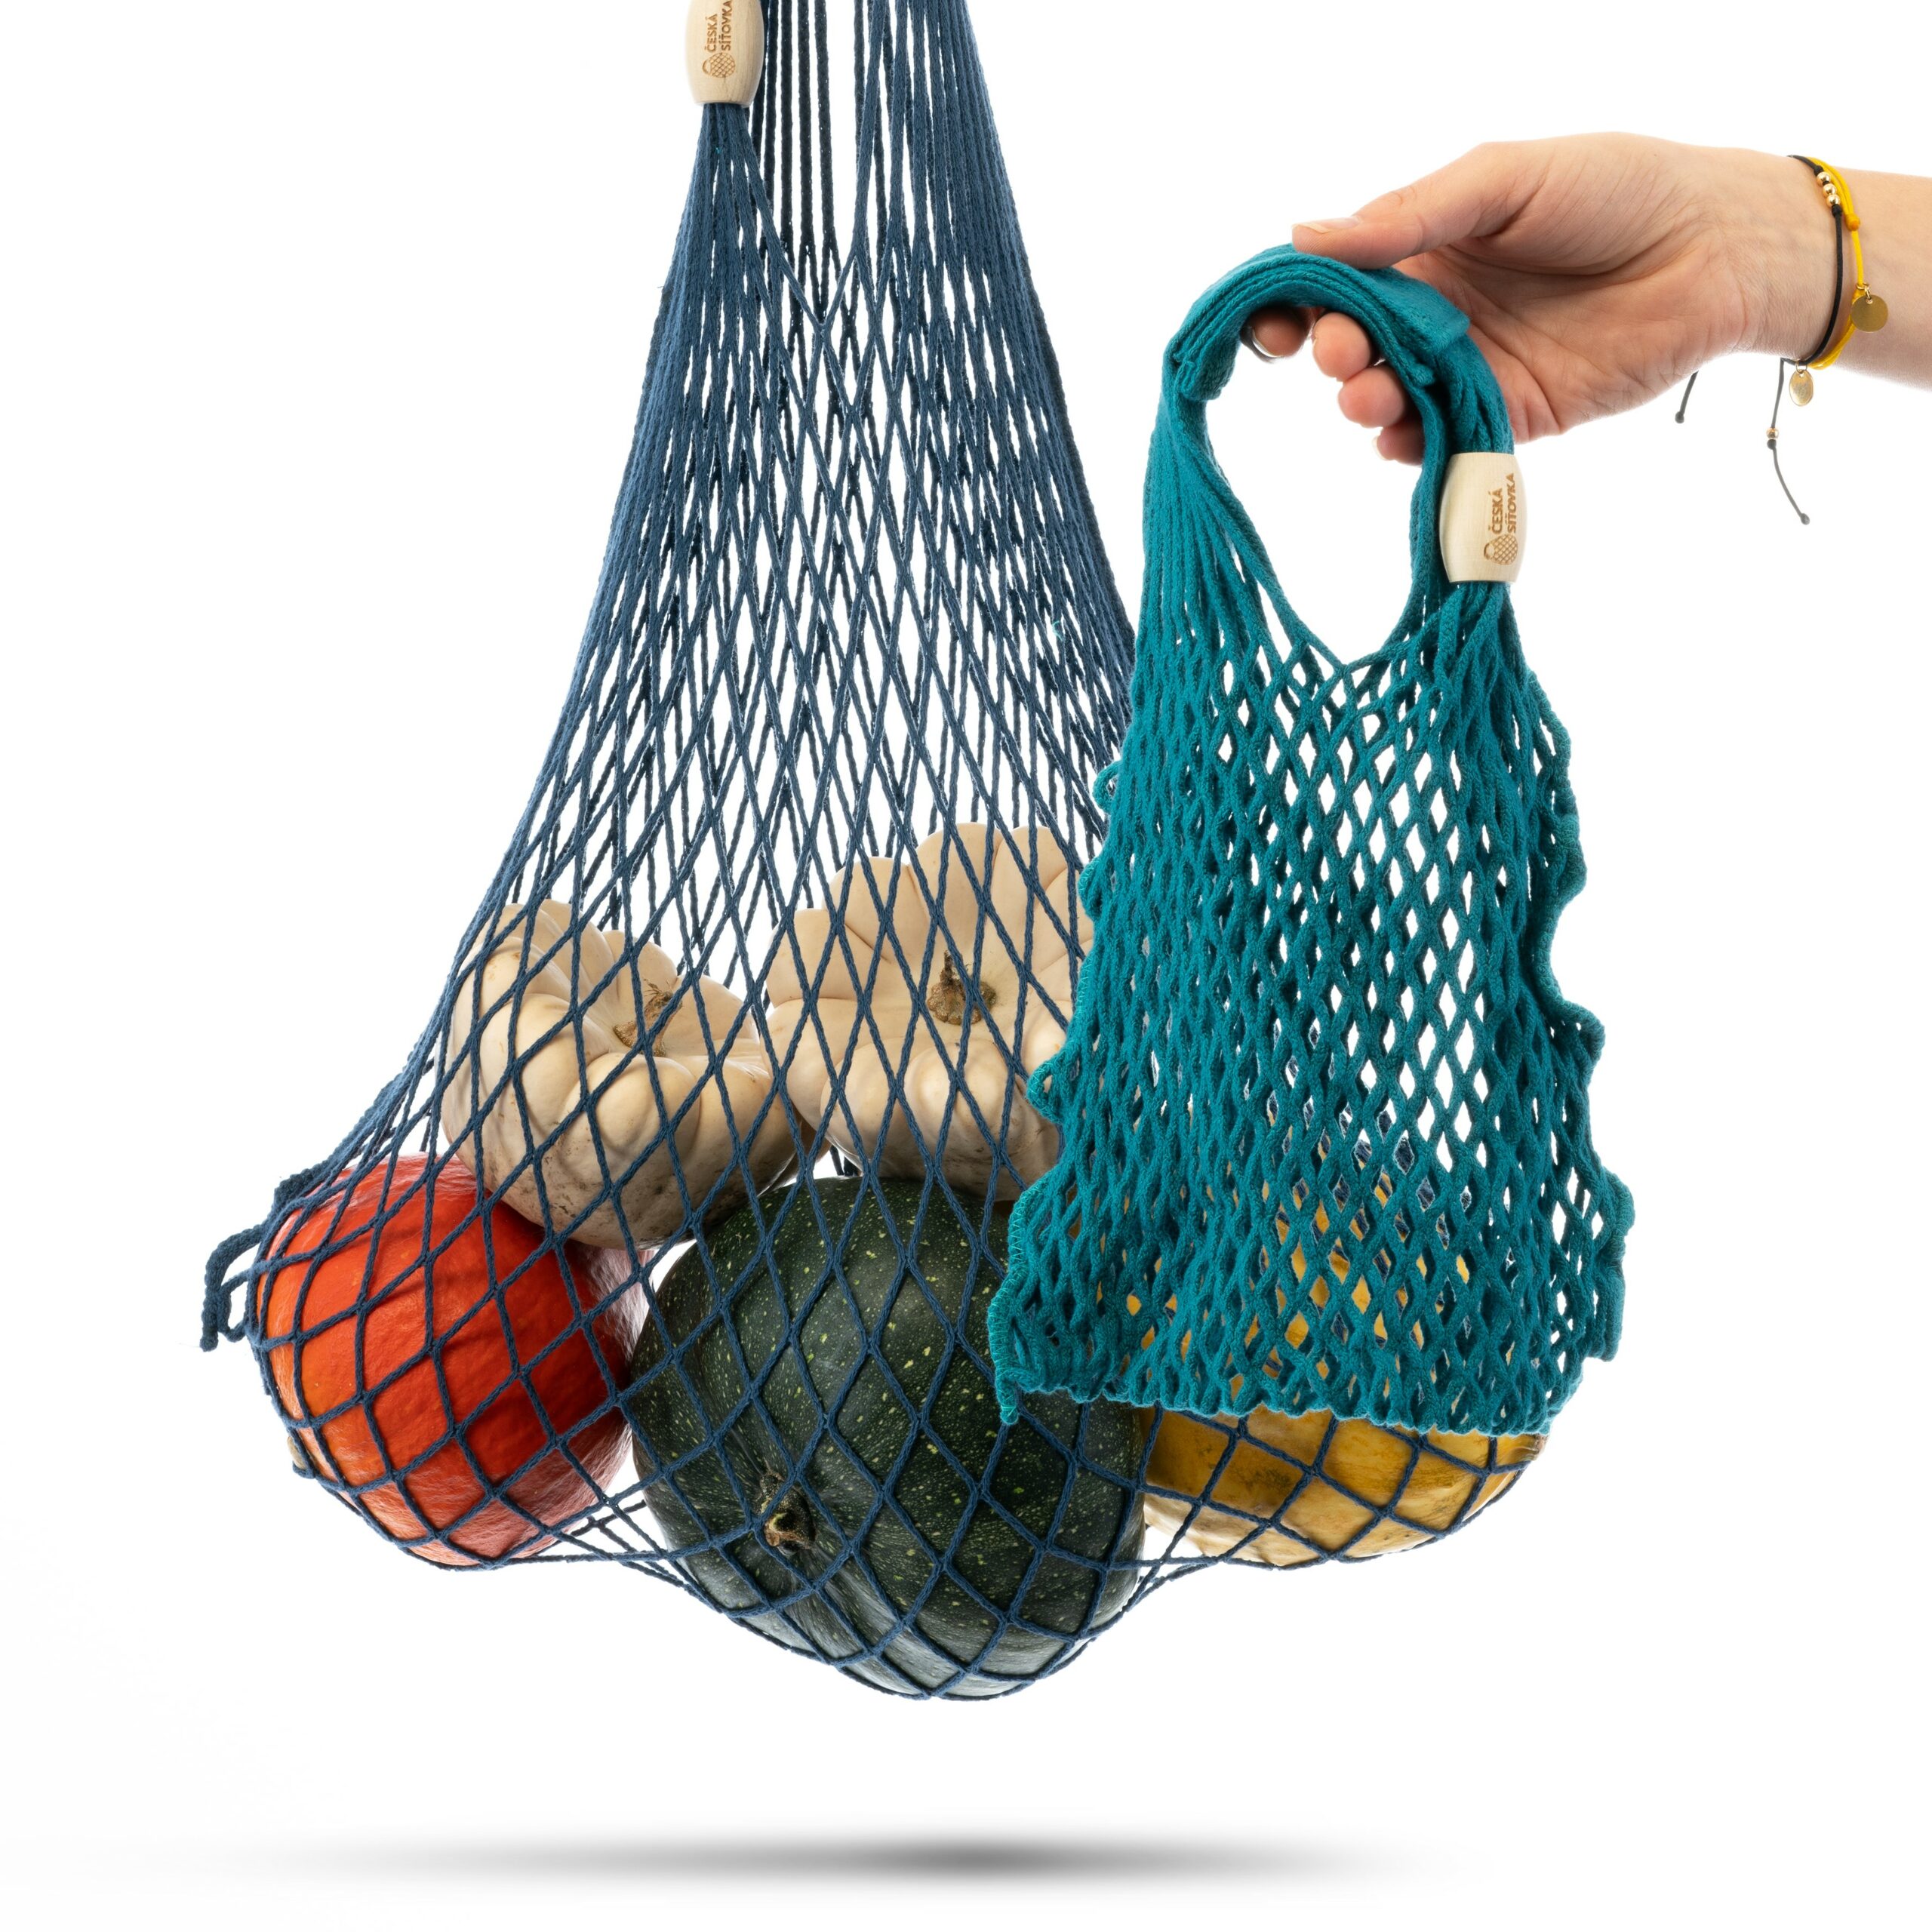 Fishing Net Bag  Bags, Net bag, Fishing net